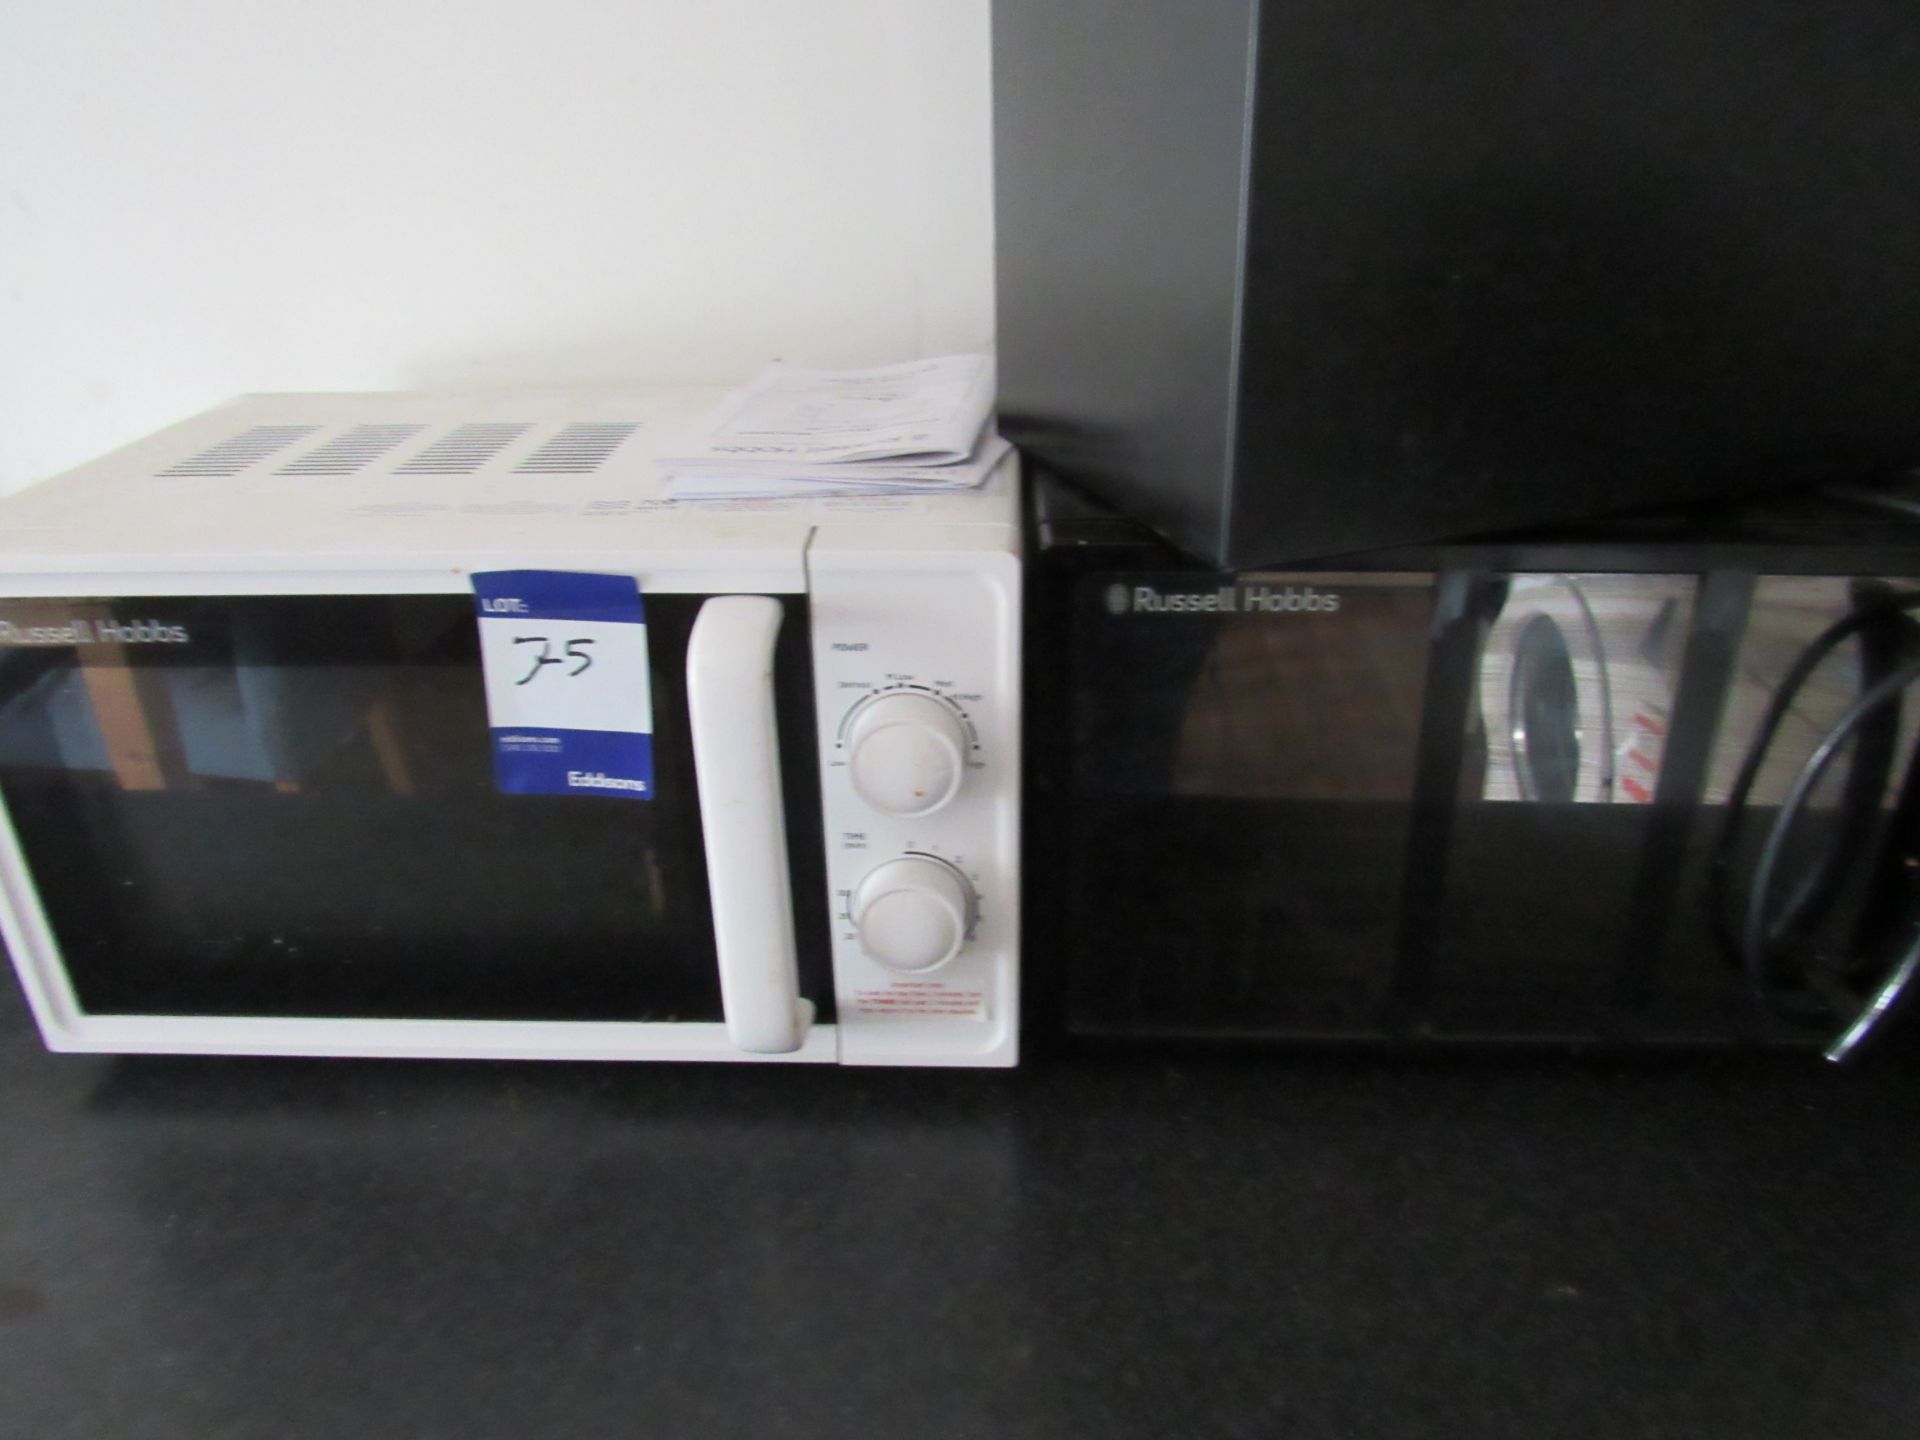 2 x Russell Hobbs microwaves